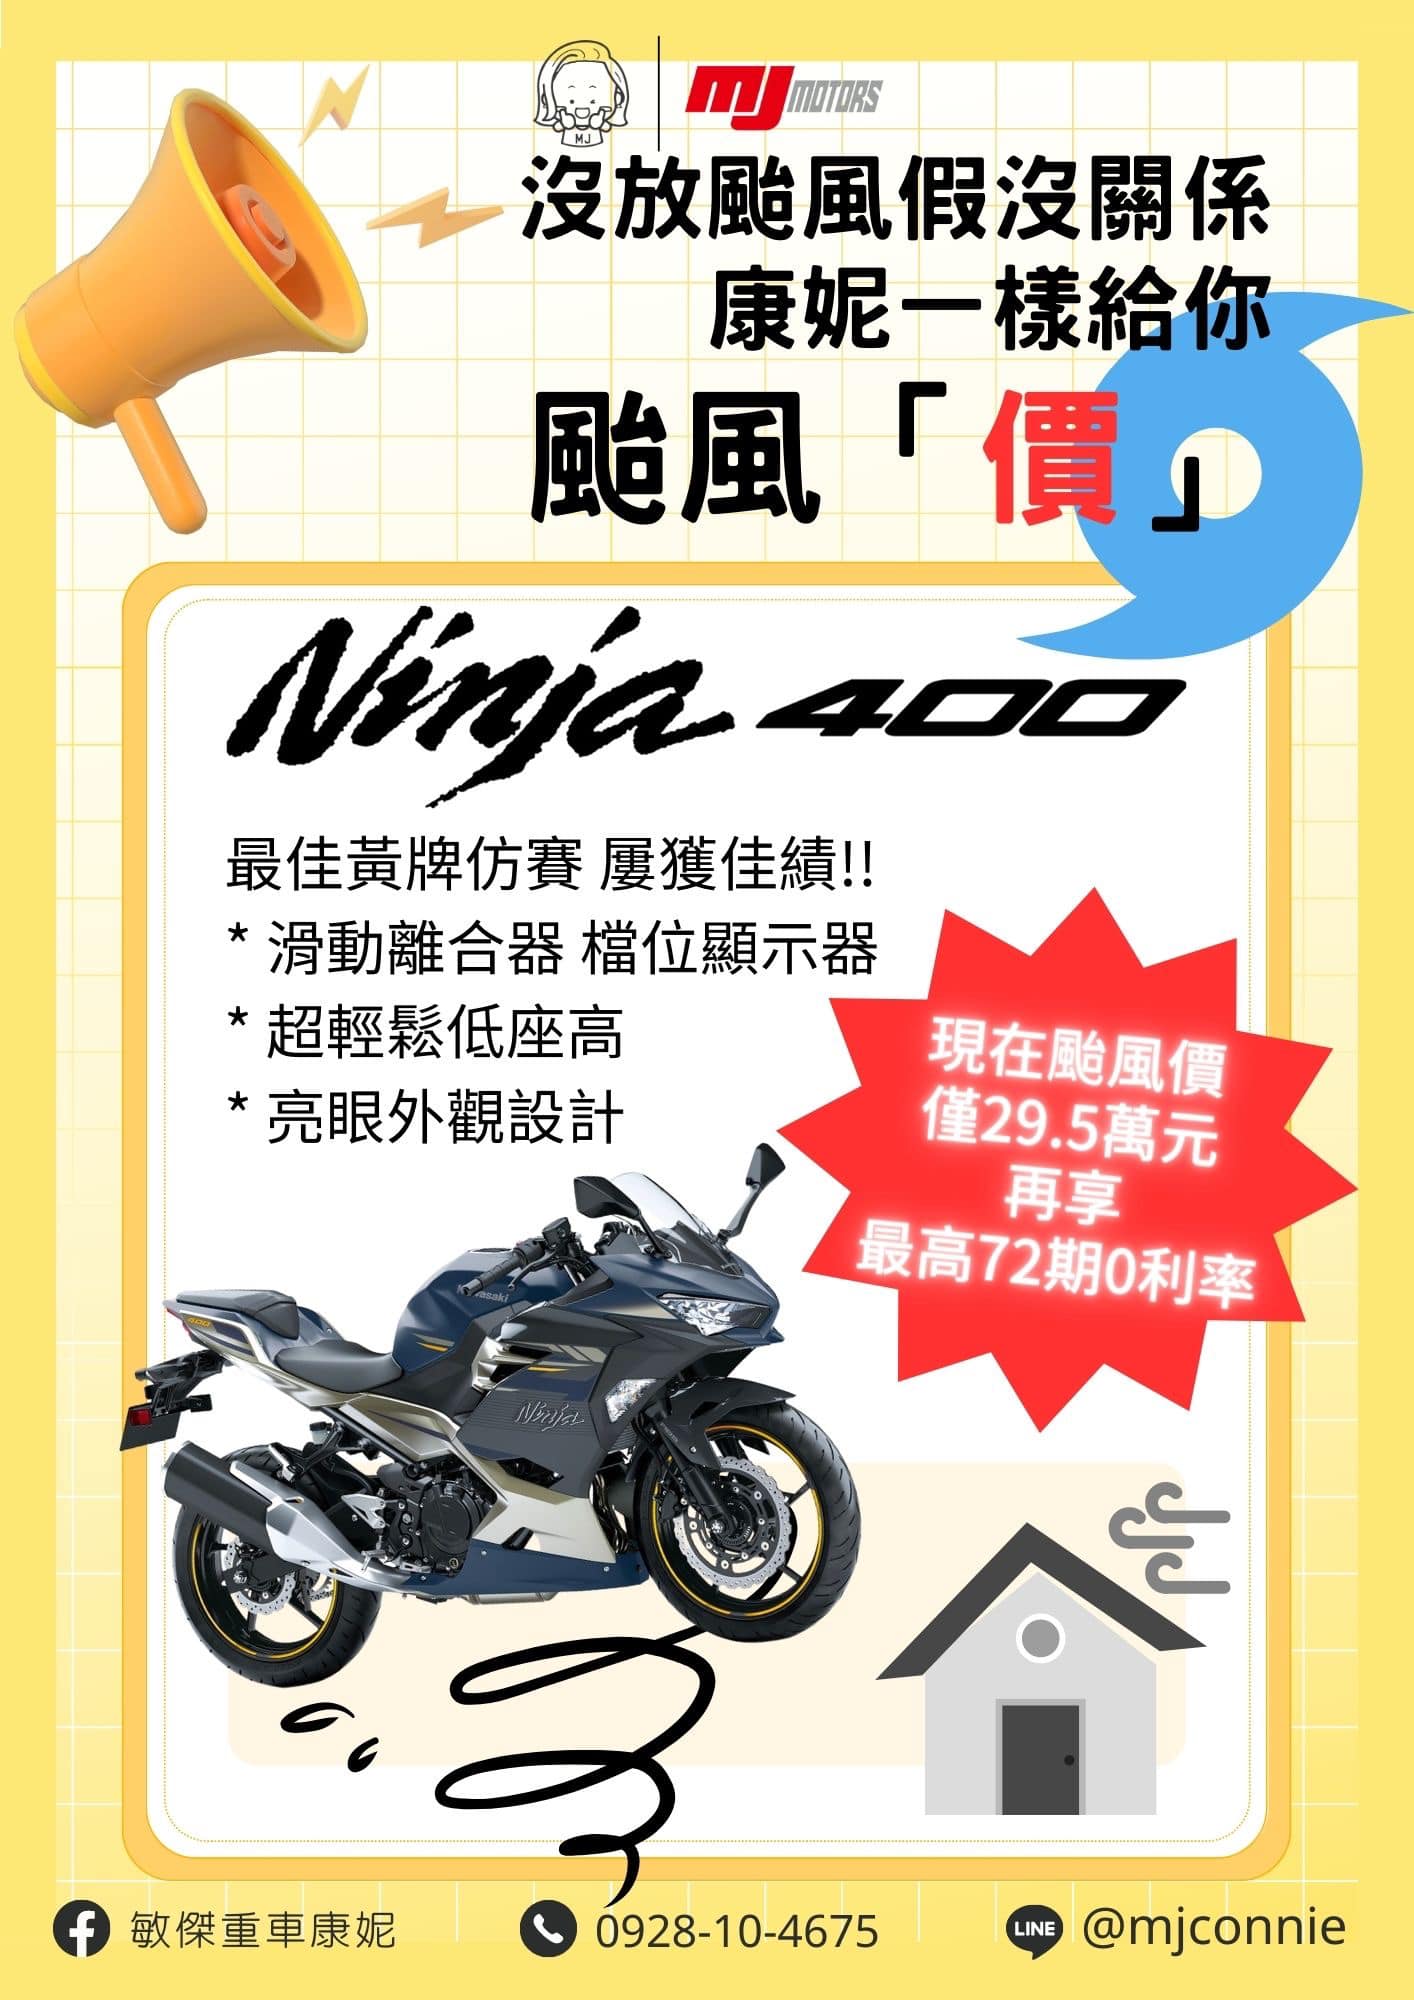 【敏傑車業資深銷售專員 康妮 Connie】KAWASAKI NINJA400 - 「Webike-摩托車市」 『敏傑康妮』Kawasaki Ninja400 灰調藍 超好看 線上圓夢 免車輛頭款 72期零利率！！